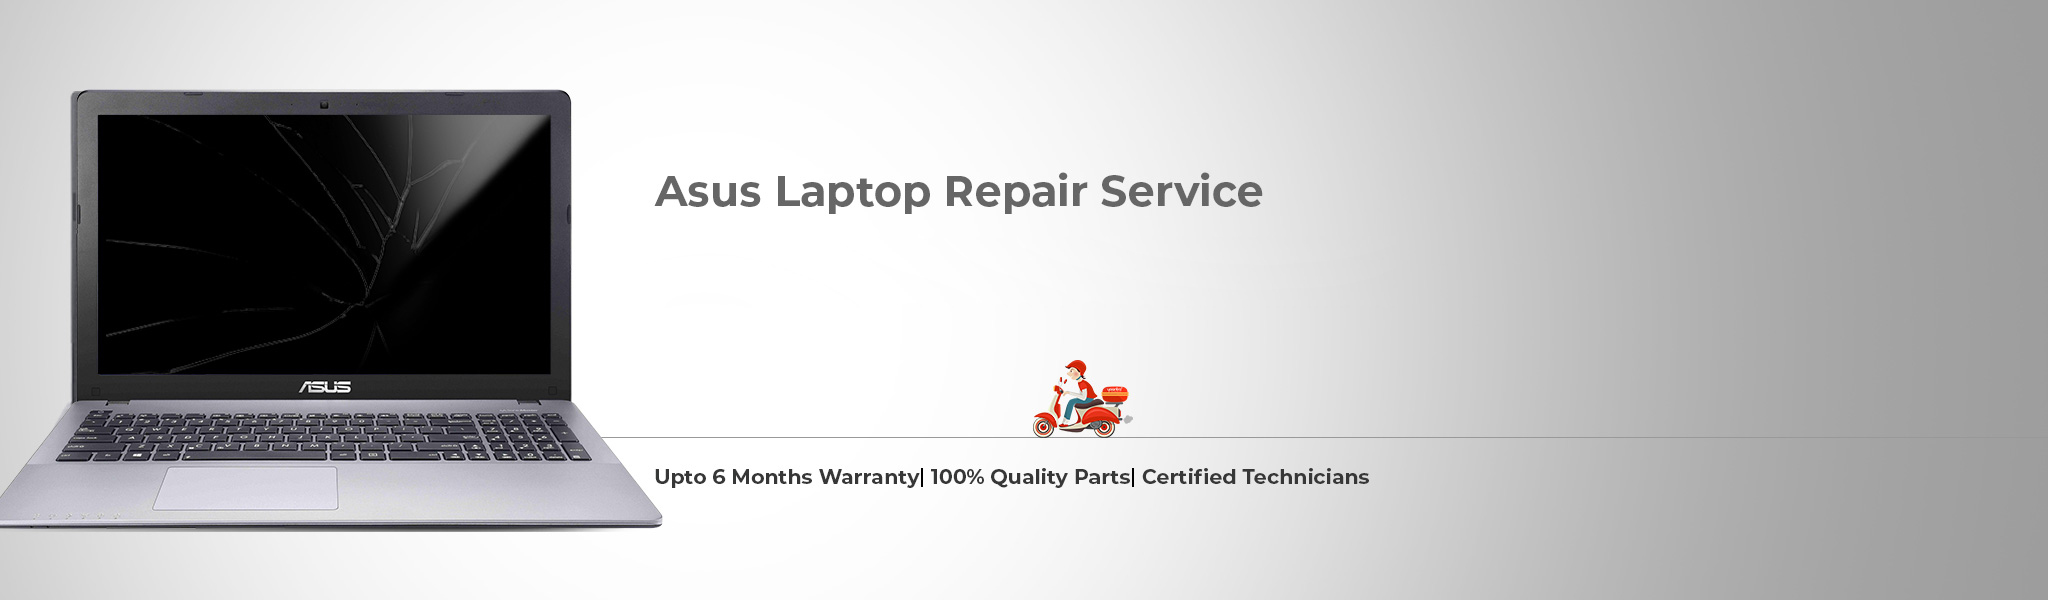 asus-laptop-repair.jpg